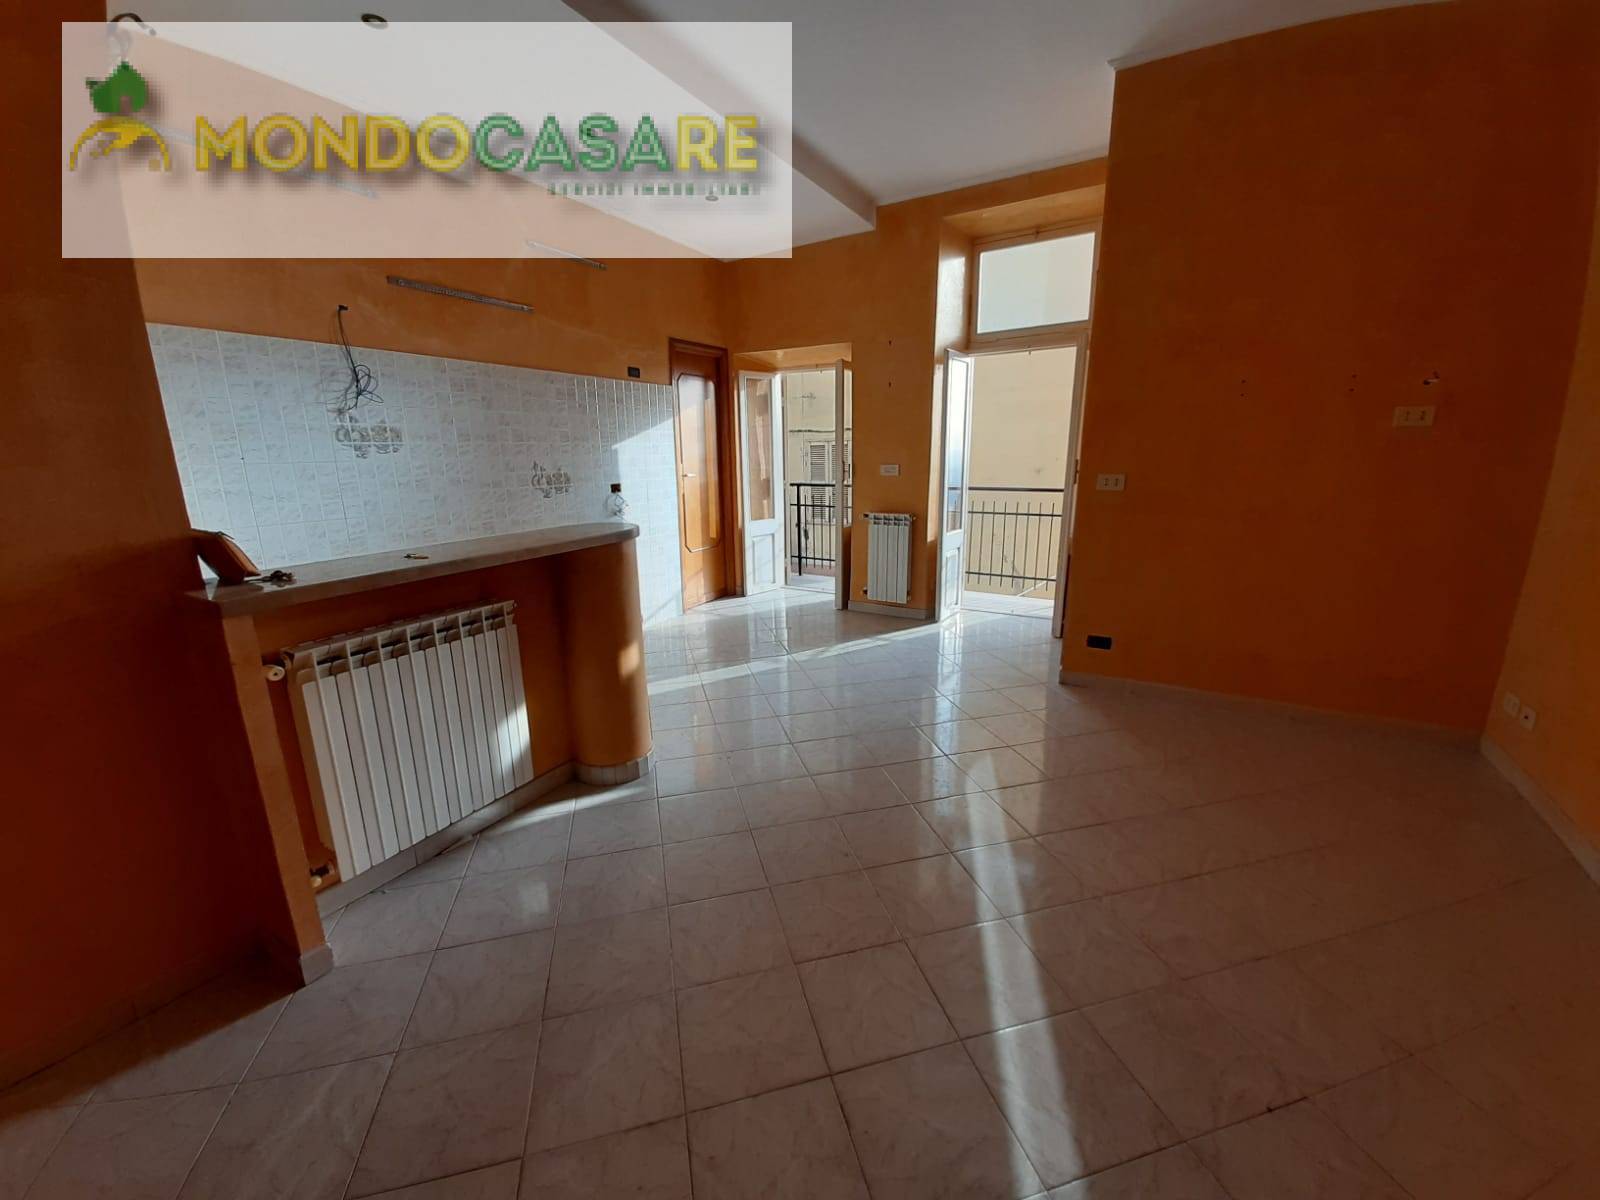 Appartamento in vendita a Palombara Sabina, 3 locali, prezzo € 54.000 | CambioCasa.it